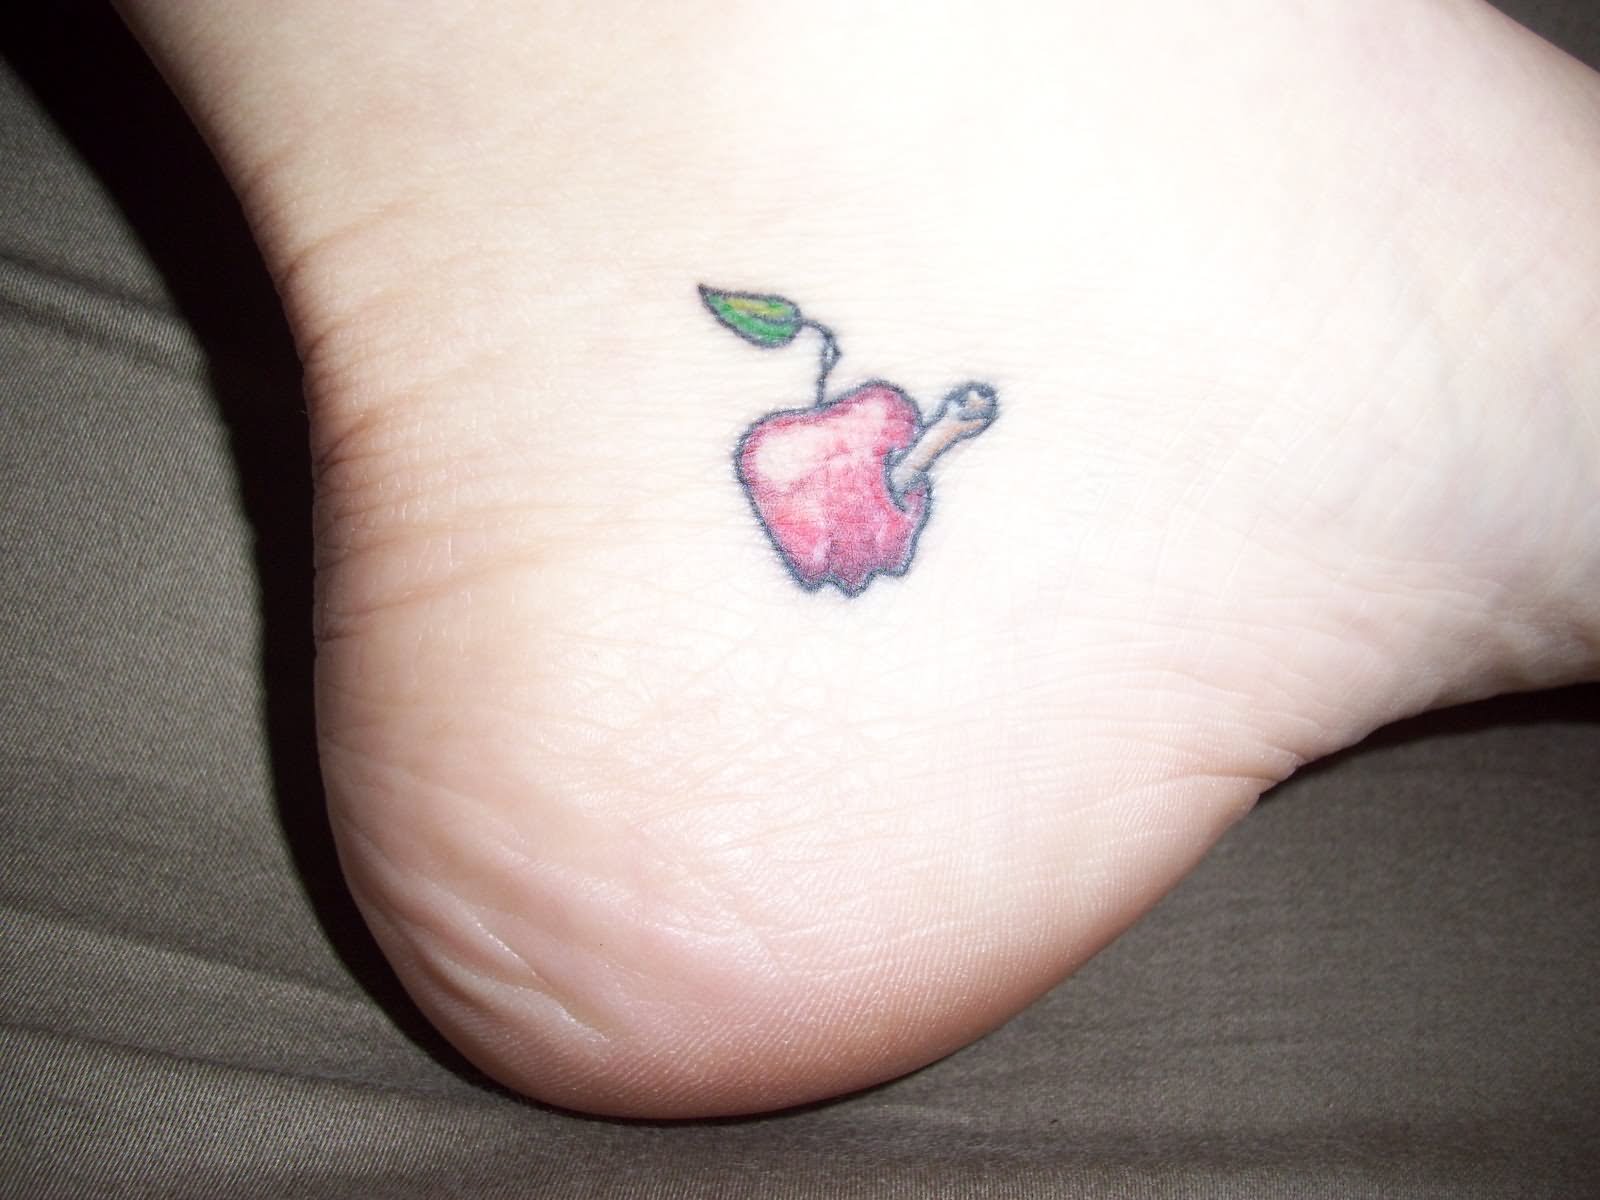 Red Apple Tattoo On Heel